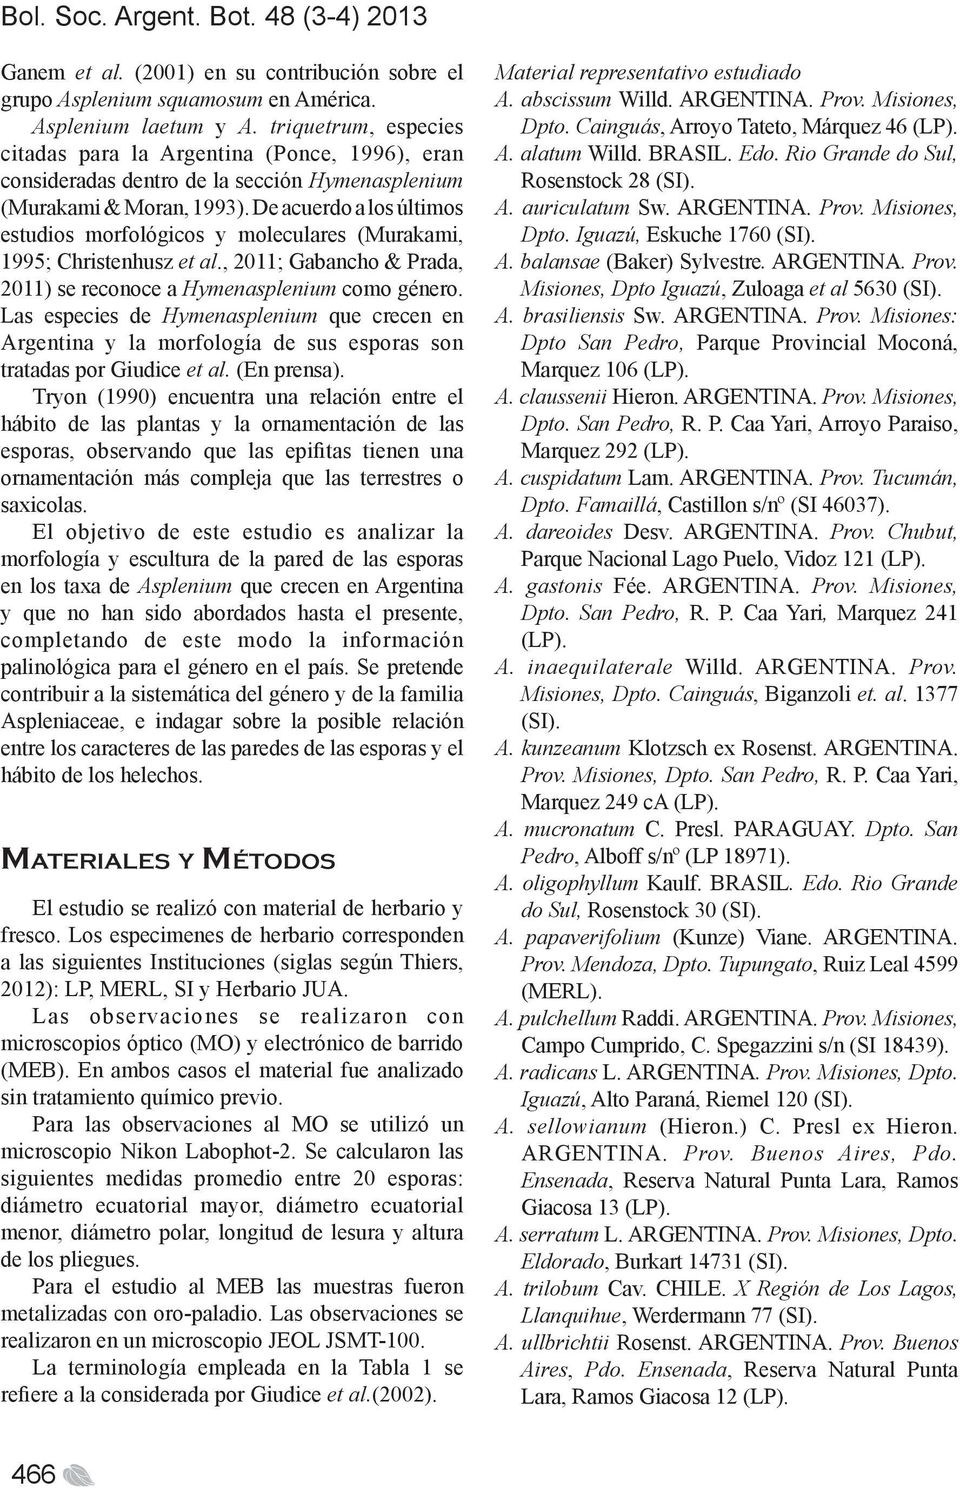 De acuerdo a los últimos estudios morfológicos y moleculares (Murakami, 1995; Christenhusz et al., 2011; Gabancho & Prada, 2011) se reconoce a Hymenasplenium como género.